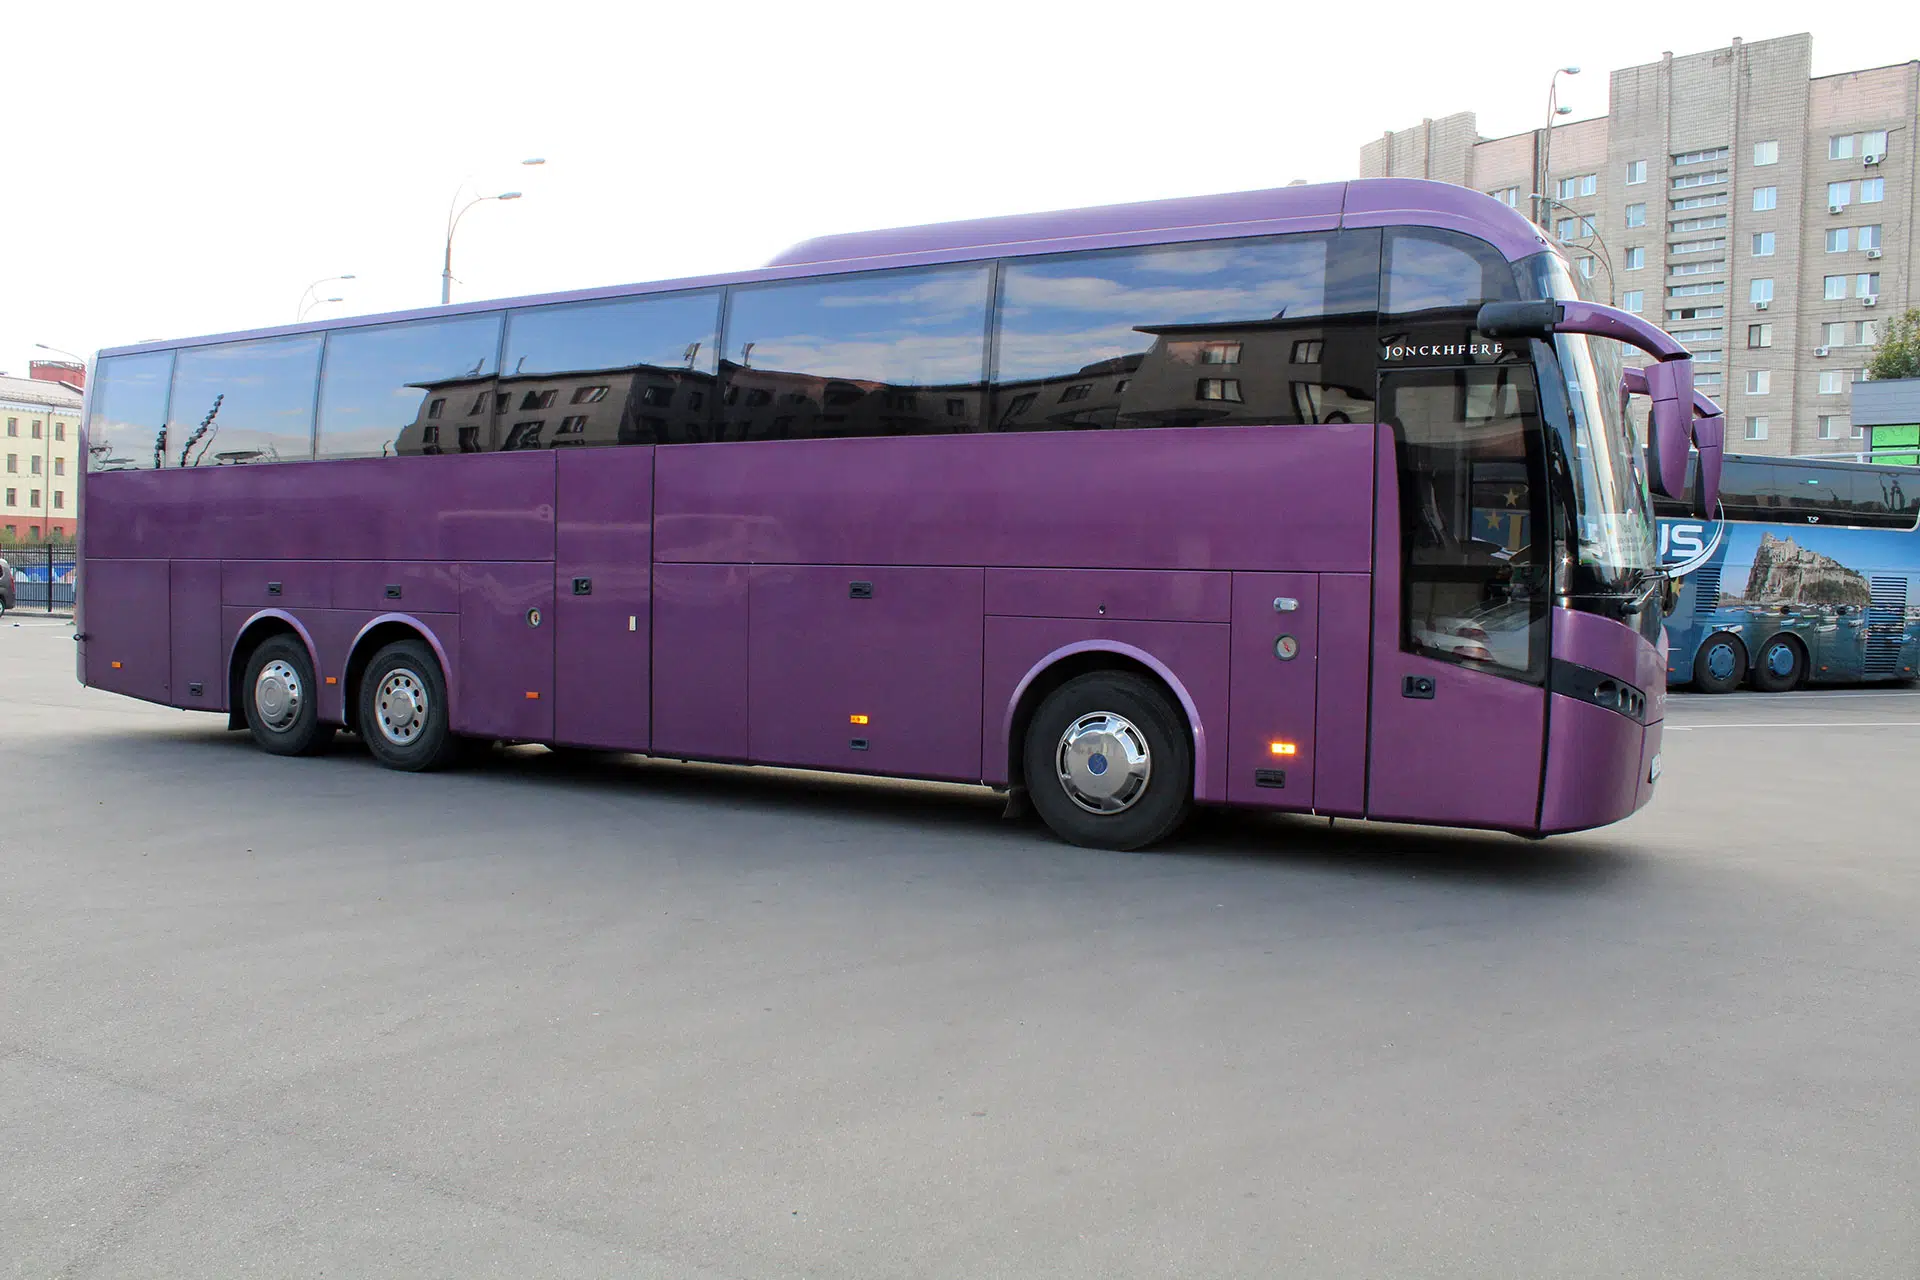 Автобус 8